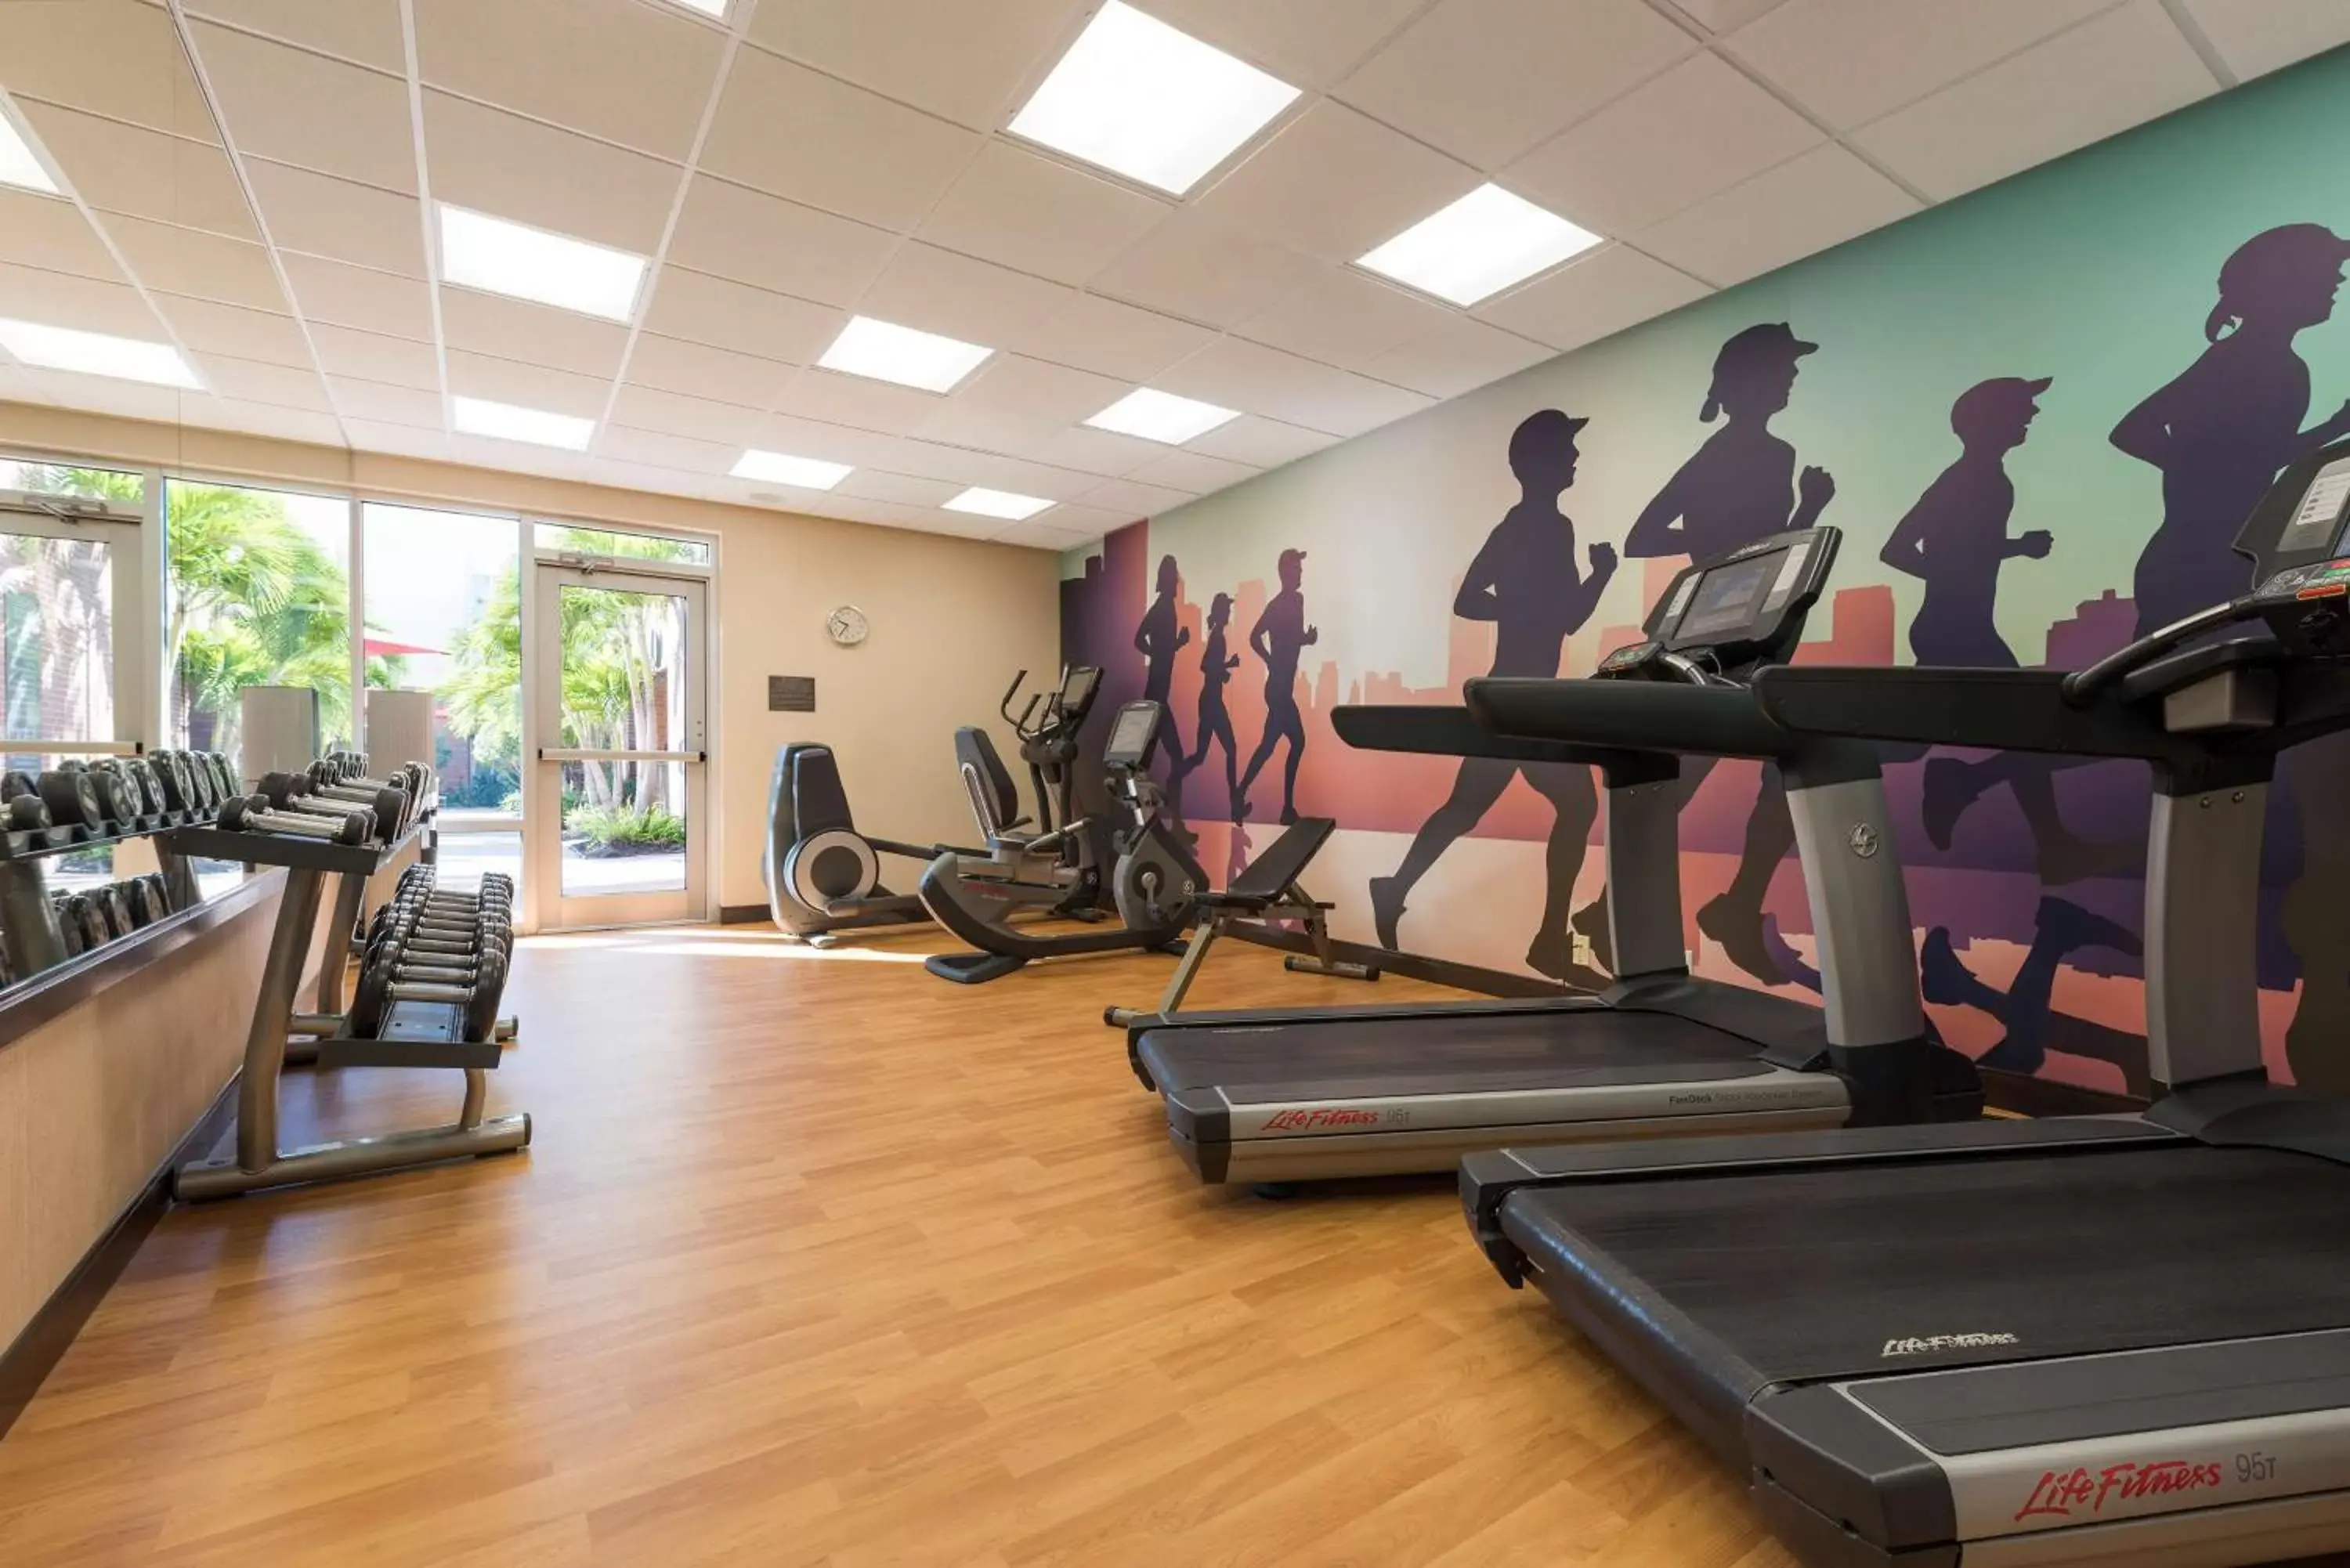 Fitness centre/facilities, Fitness Center/Facilities in Hyatt Place Sarasota/Bradenton